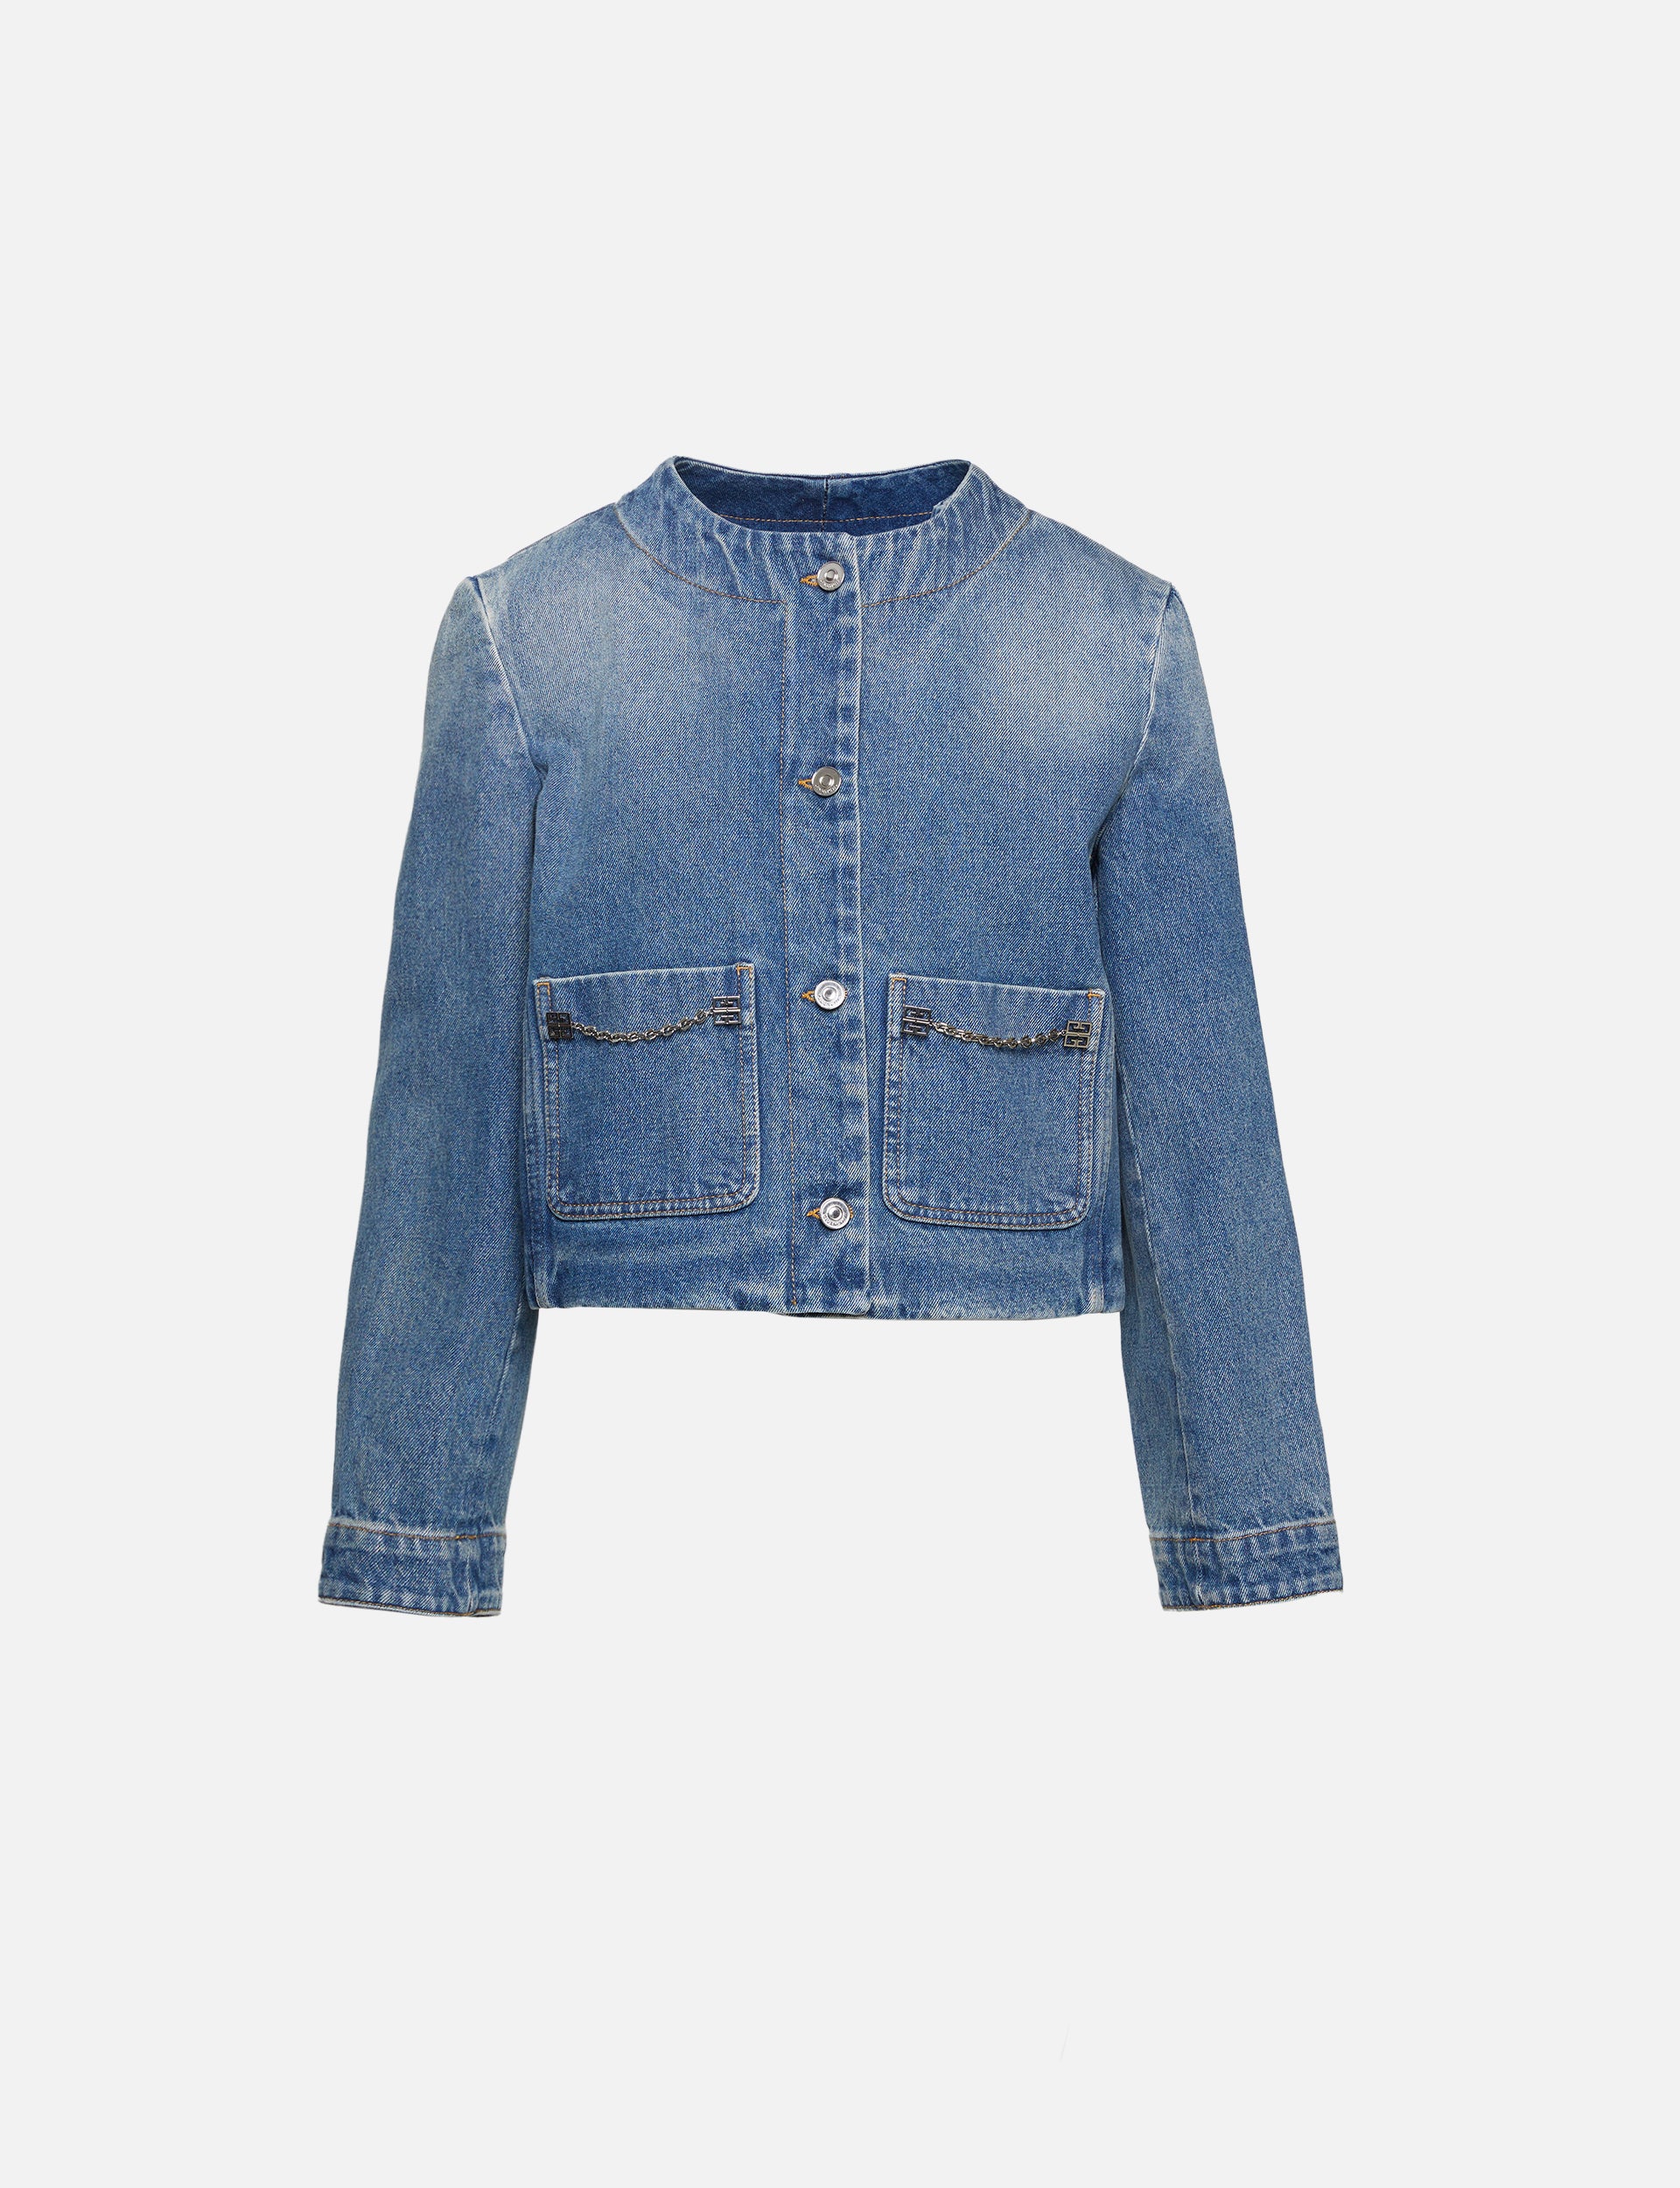 Buy Maison Margiela women collarless blue denim jacket for $580 online on  SV77, S51AM0447/S30561/966